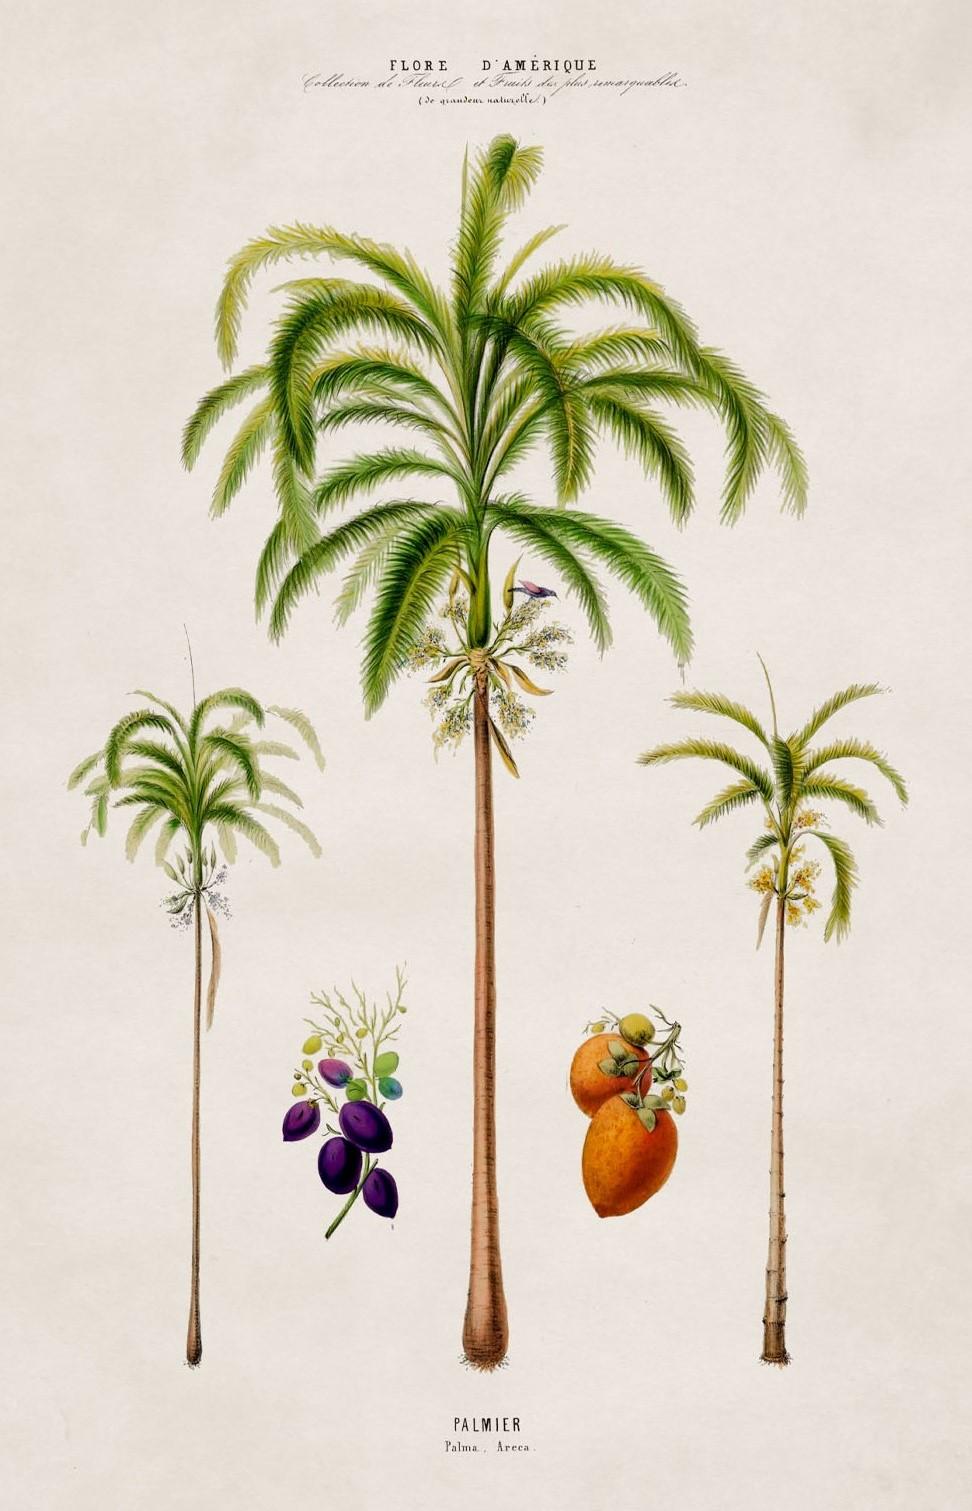 where do palm trees originate